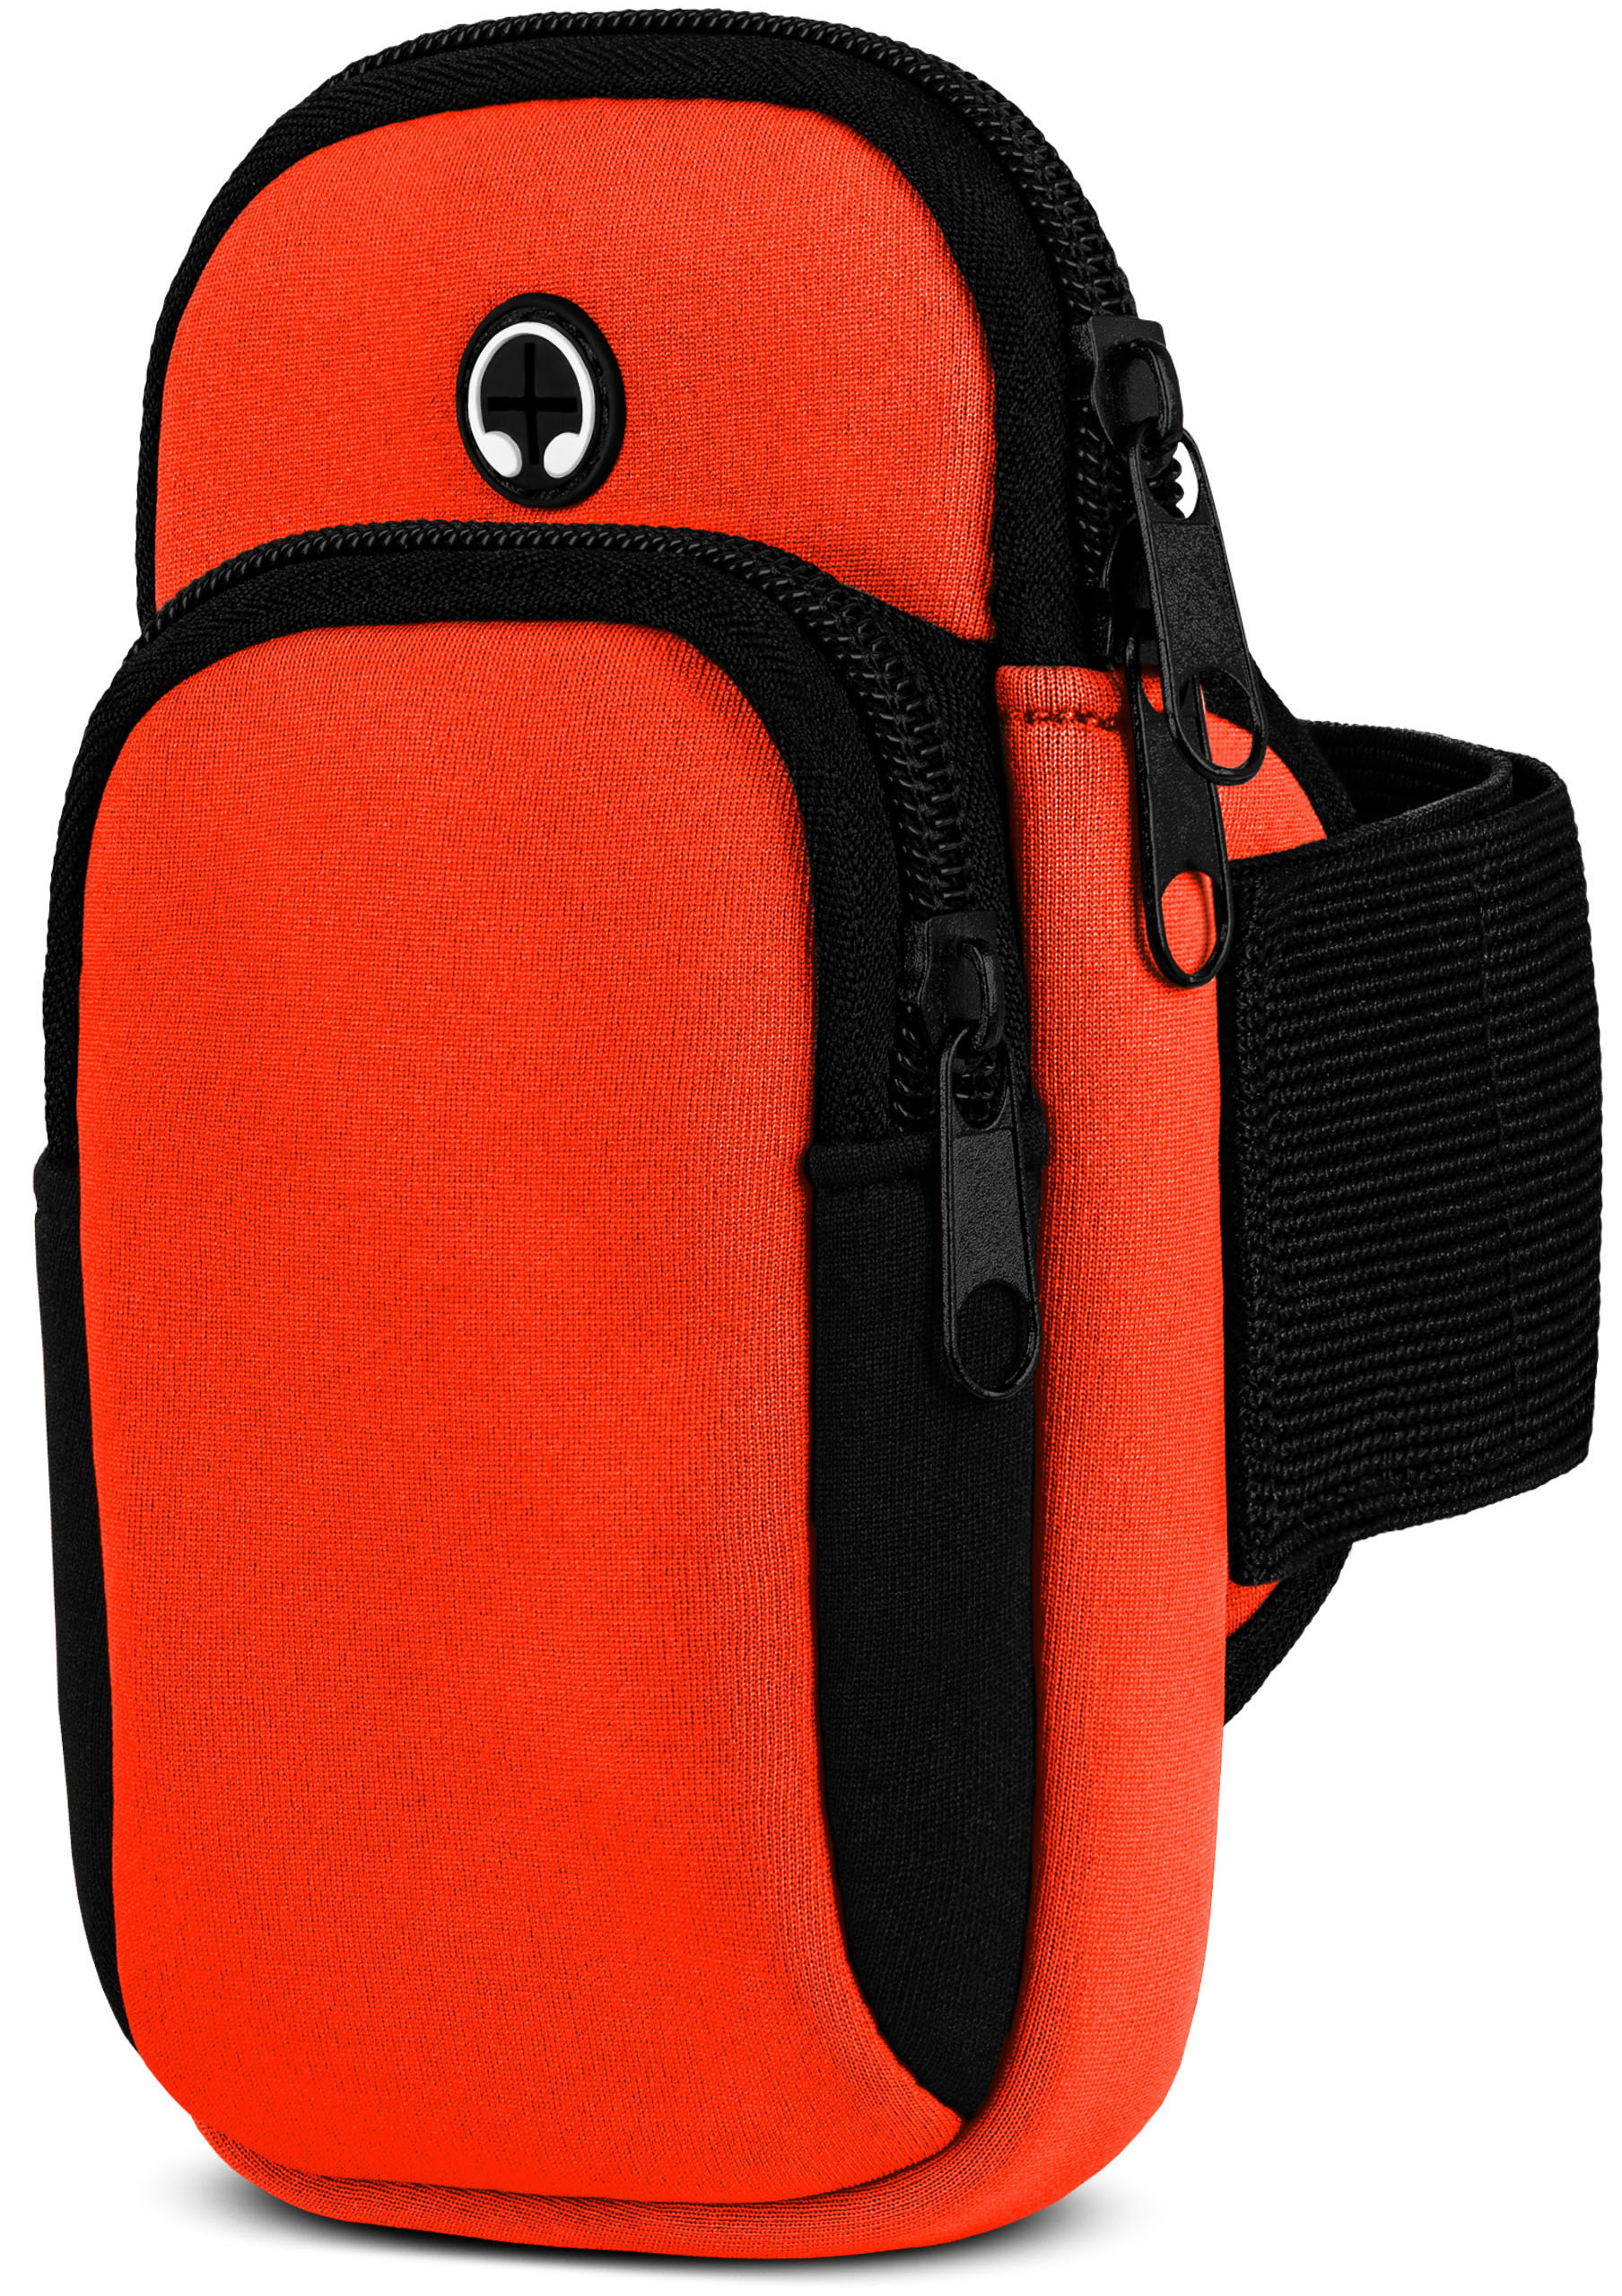 Cover, Orange MOEX LG, Q6, Full Armband, Sport